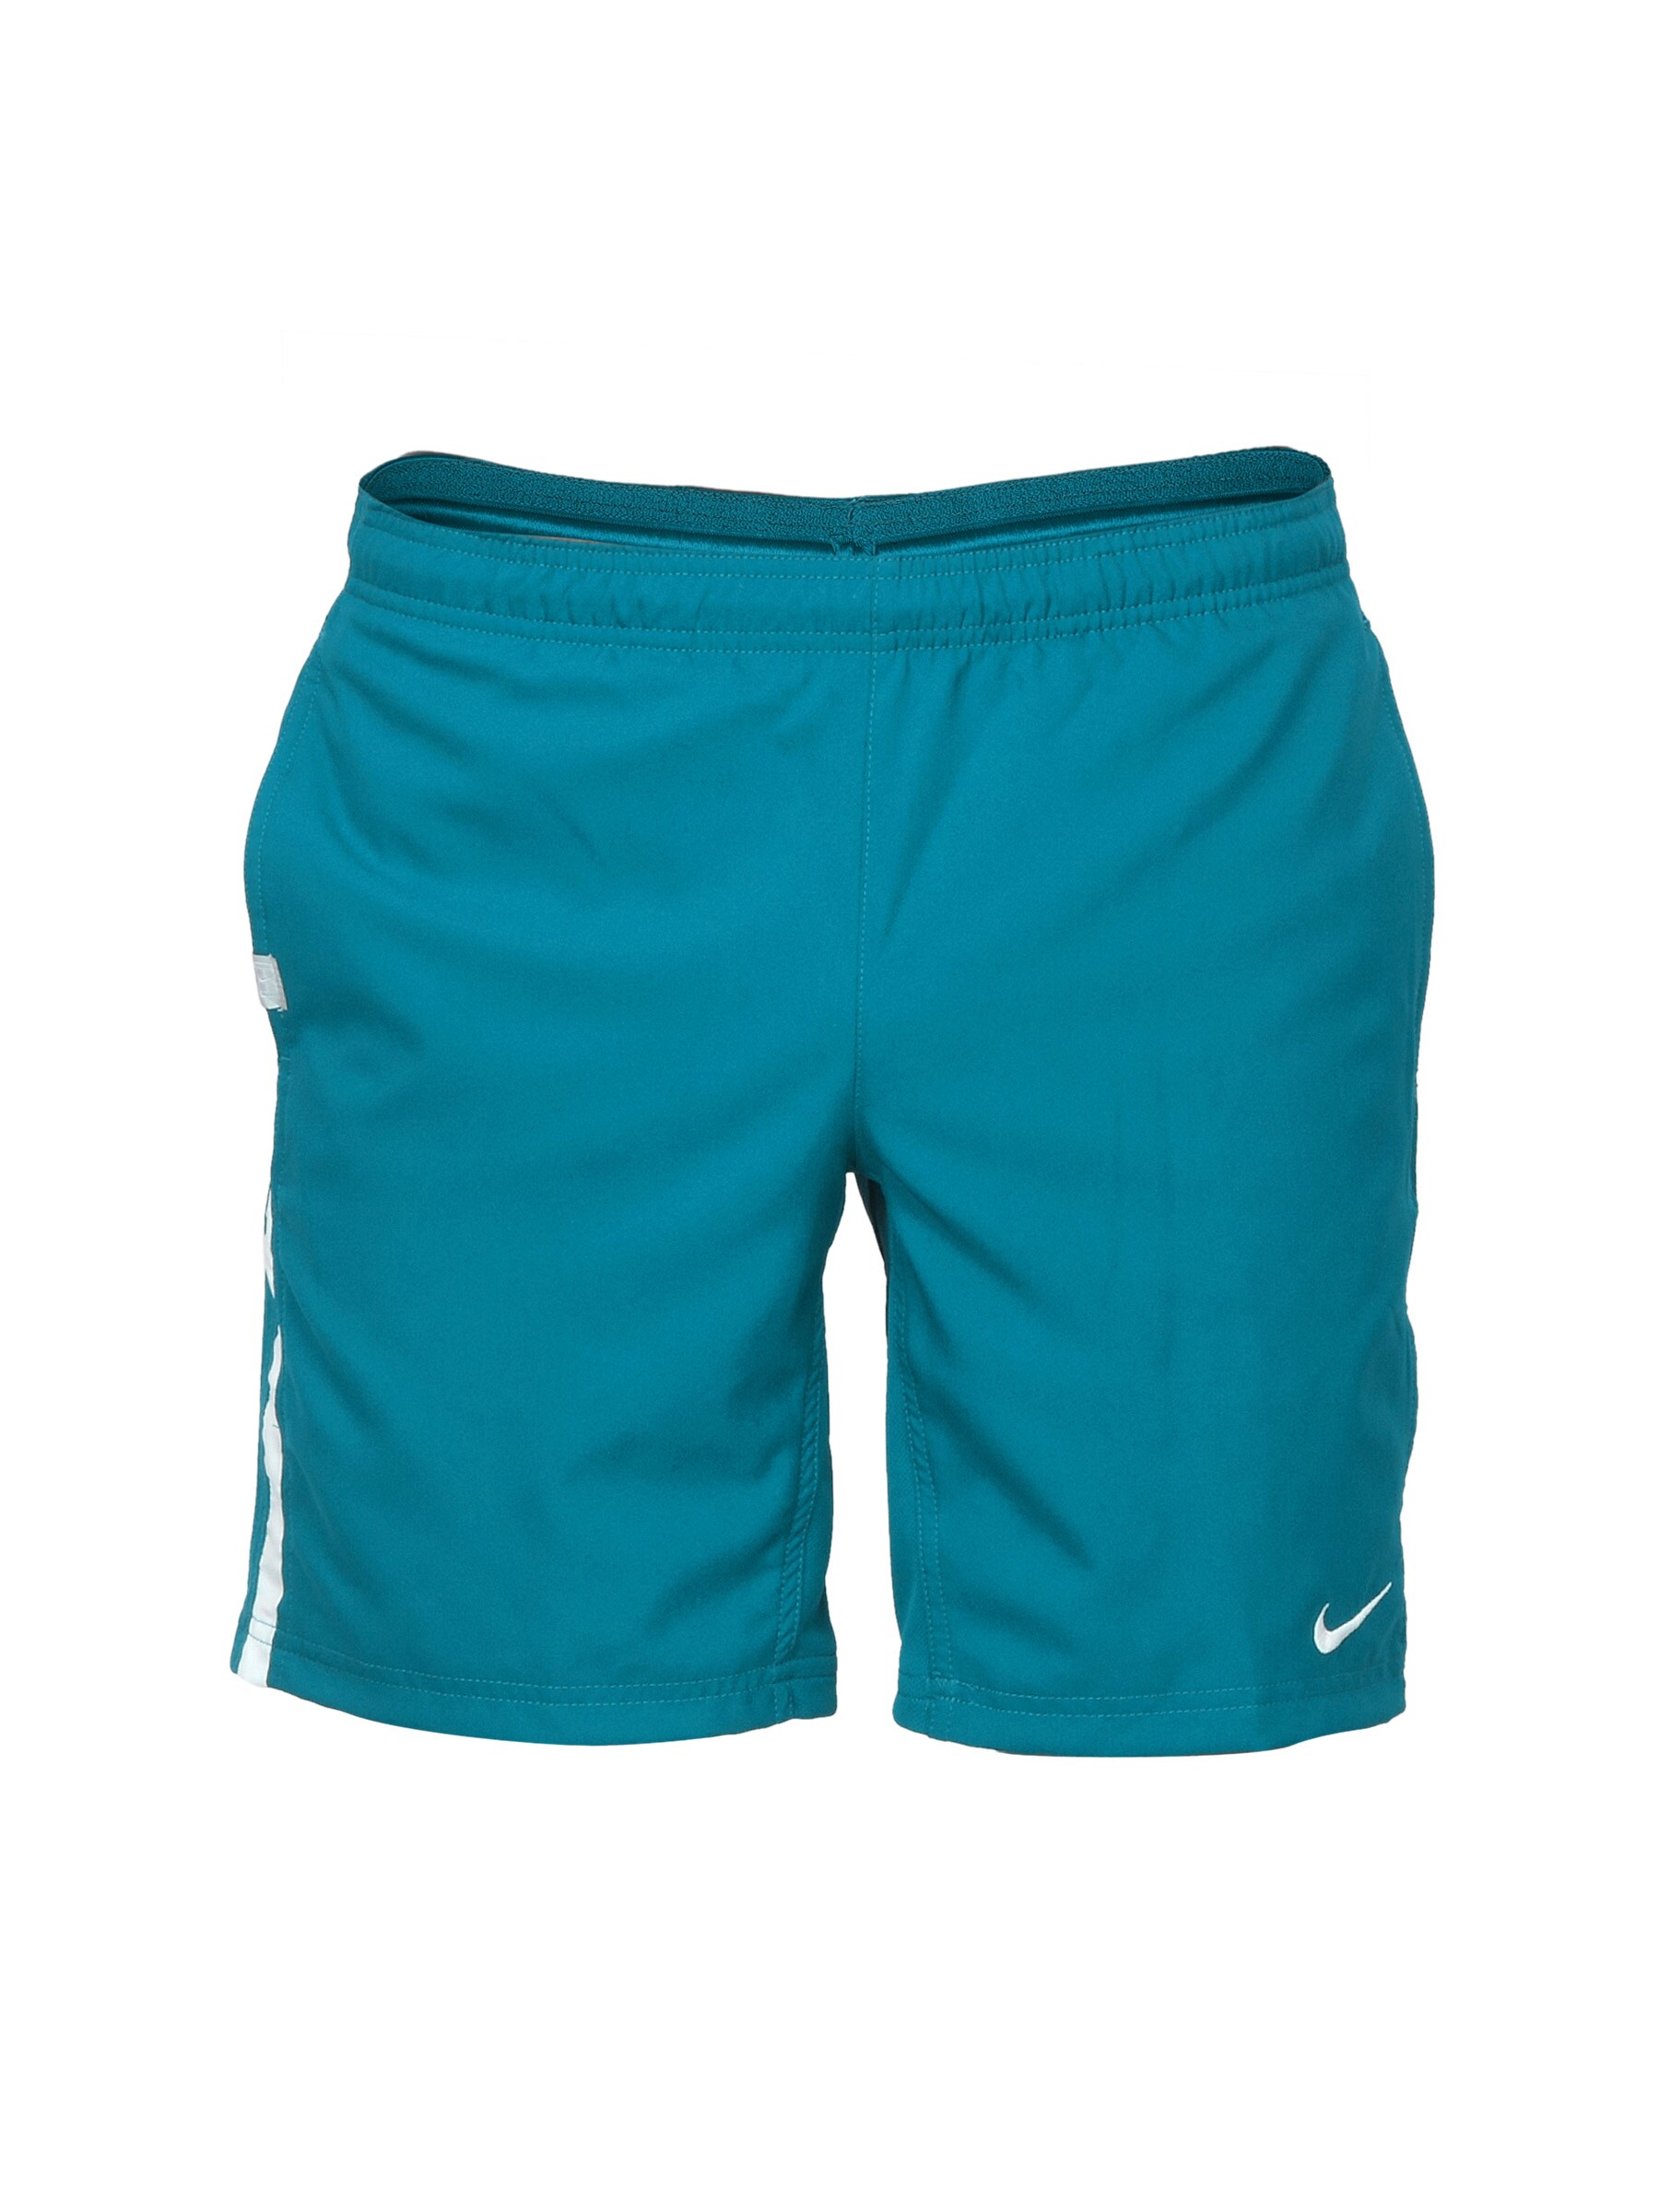 Nike Men Woven Blue Shorts